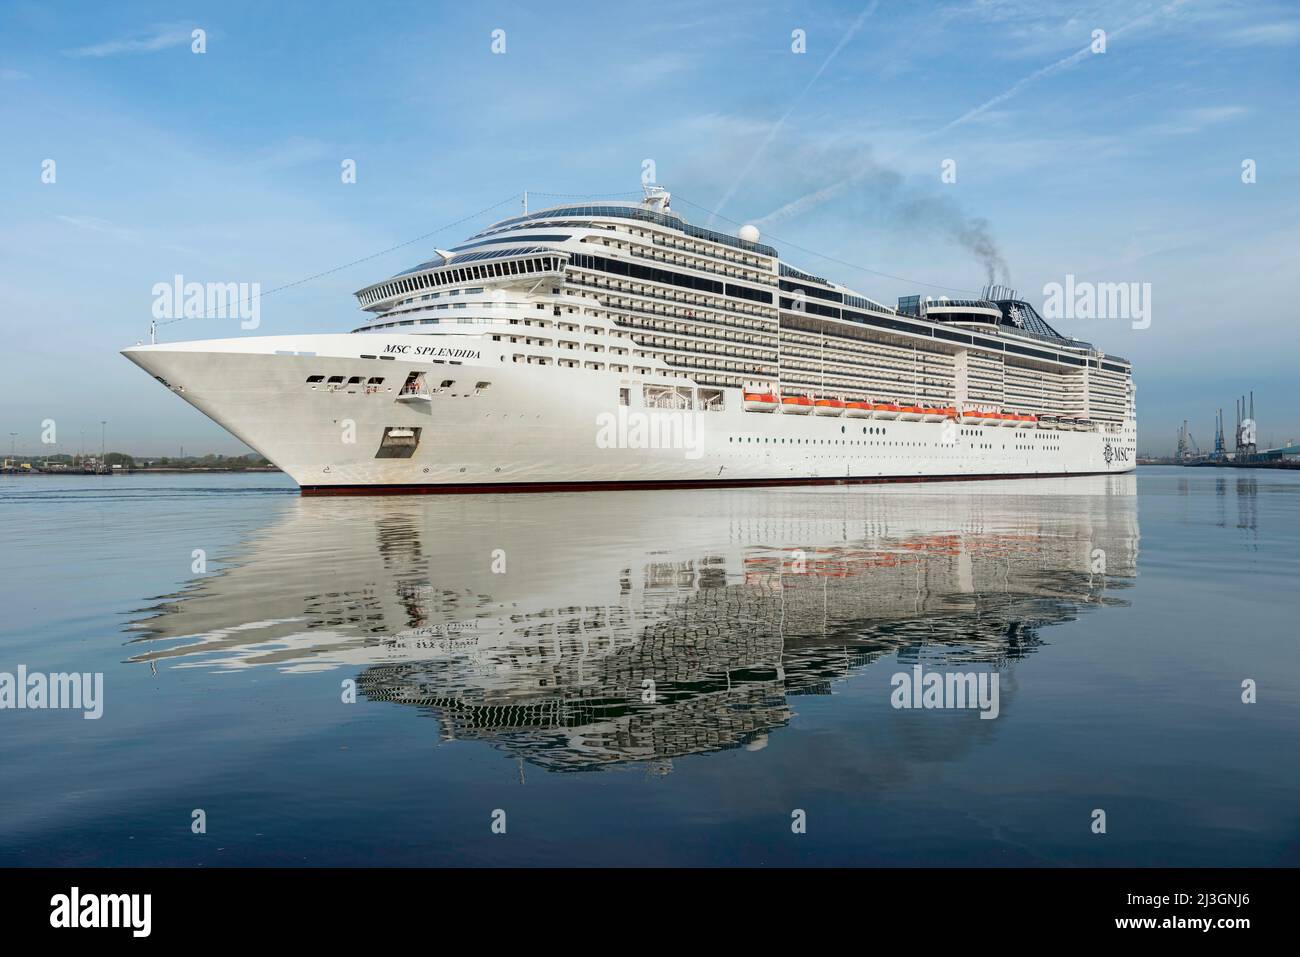 Msc splendida cruise ship immagini e fotografie stock ad alta risoluzione -  Alamy